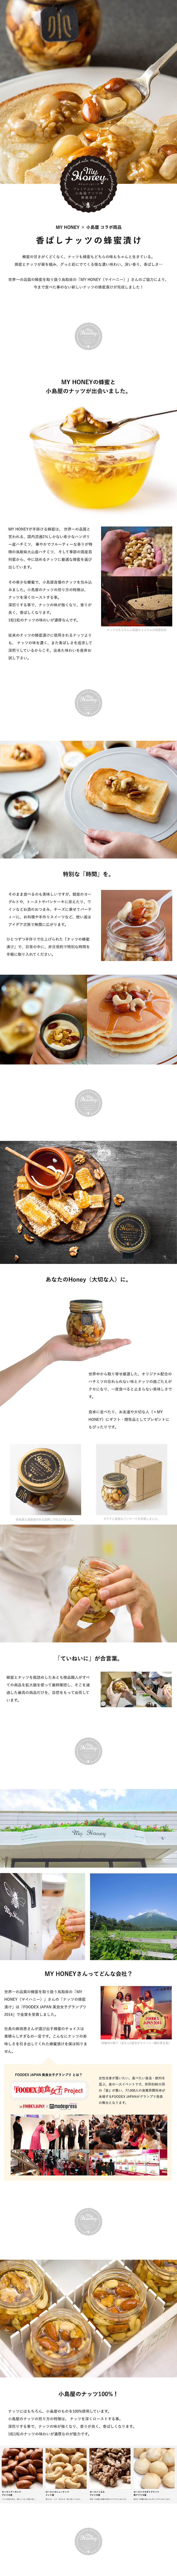 香ばしナッツの蜂蜜漬け_sp_1